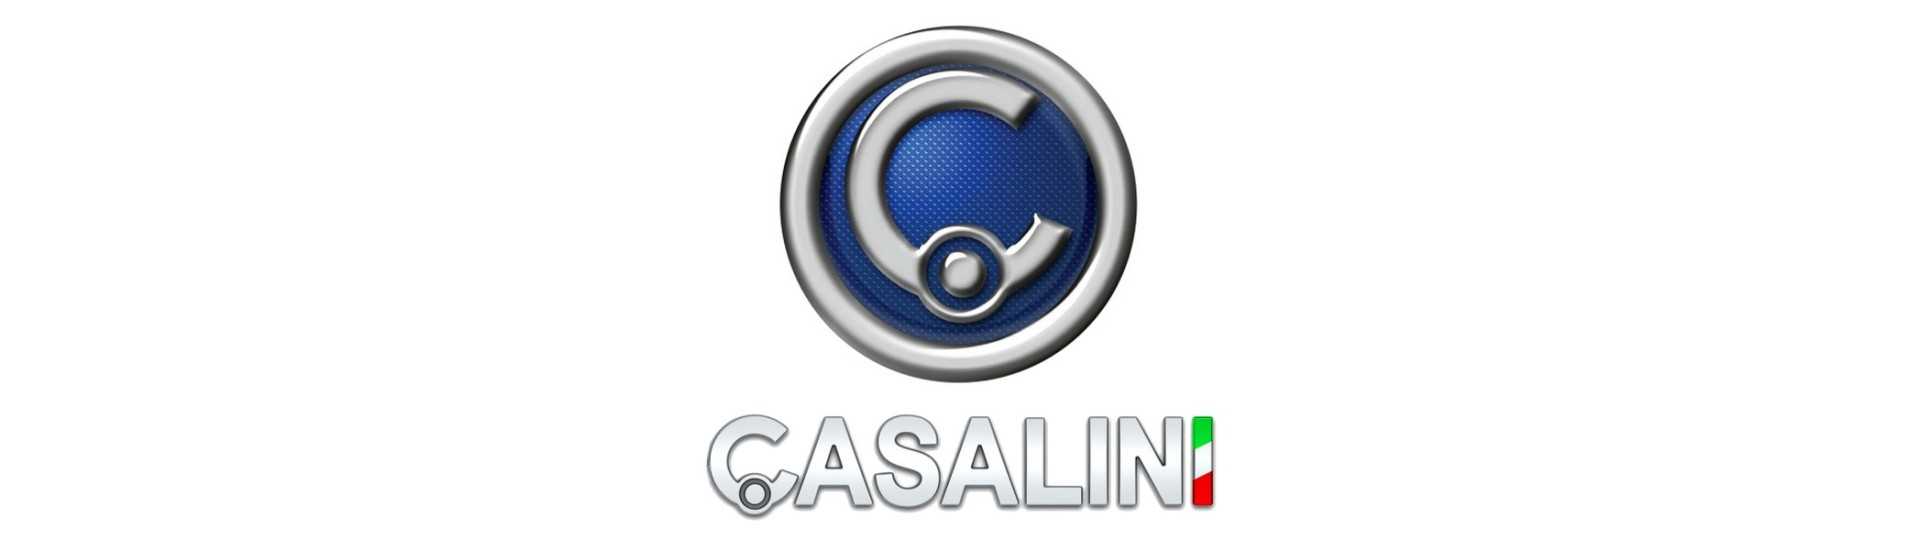 Decorație portbagaj la cel mai bun preț pentru o mașină fără permis Casalini